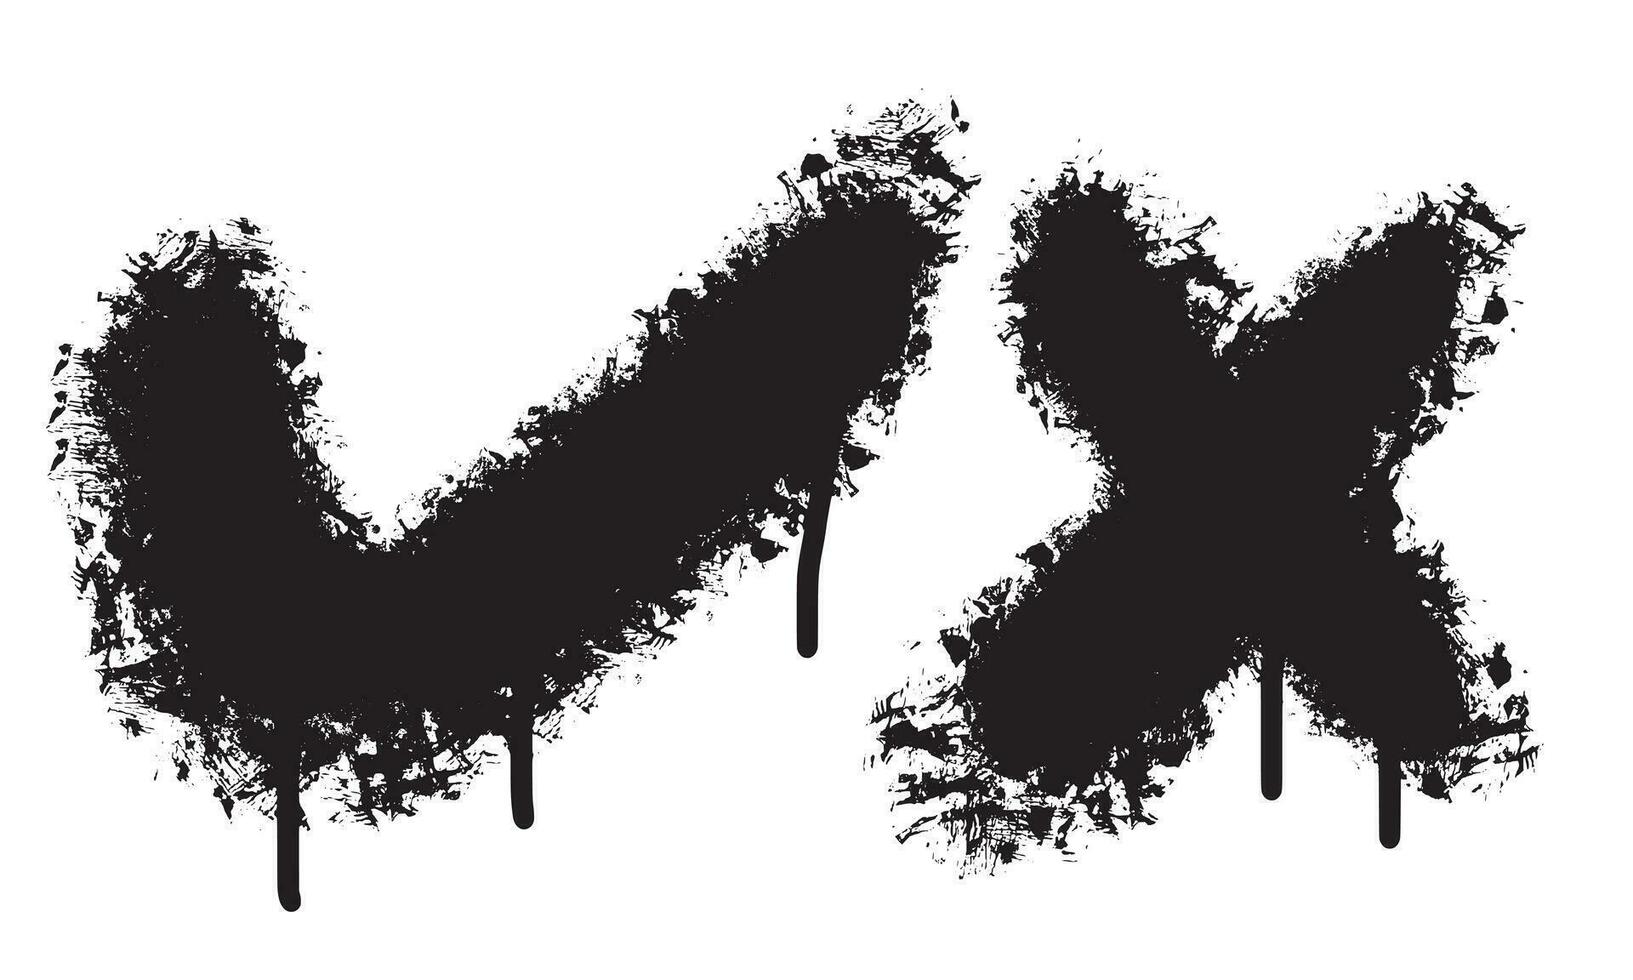 graffiti kolla upp mark sprutas i svart över vit.vektor illustration. vektor